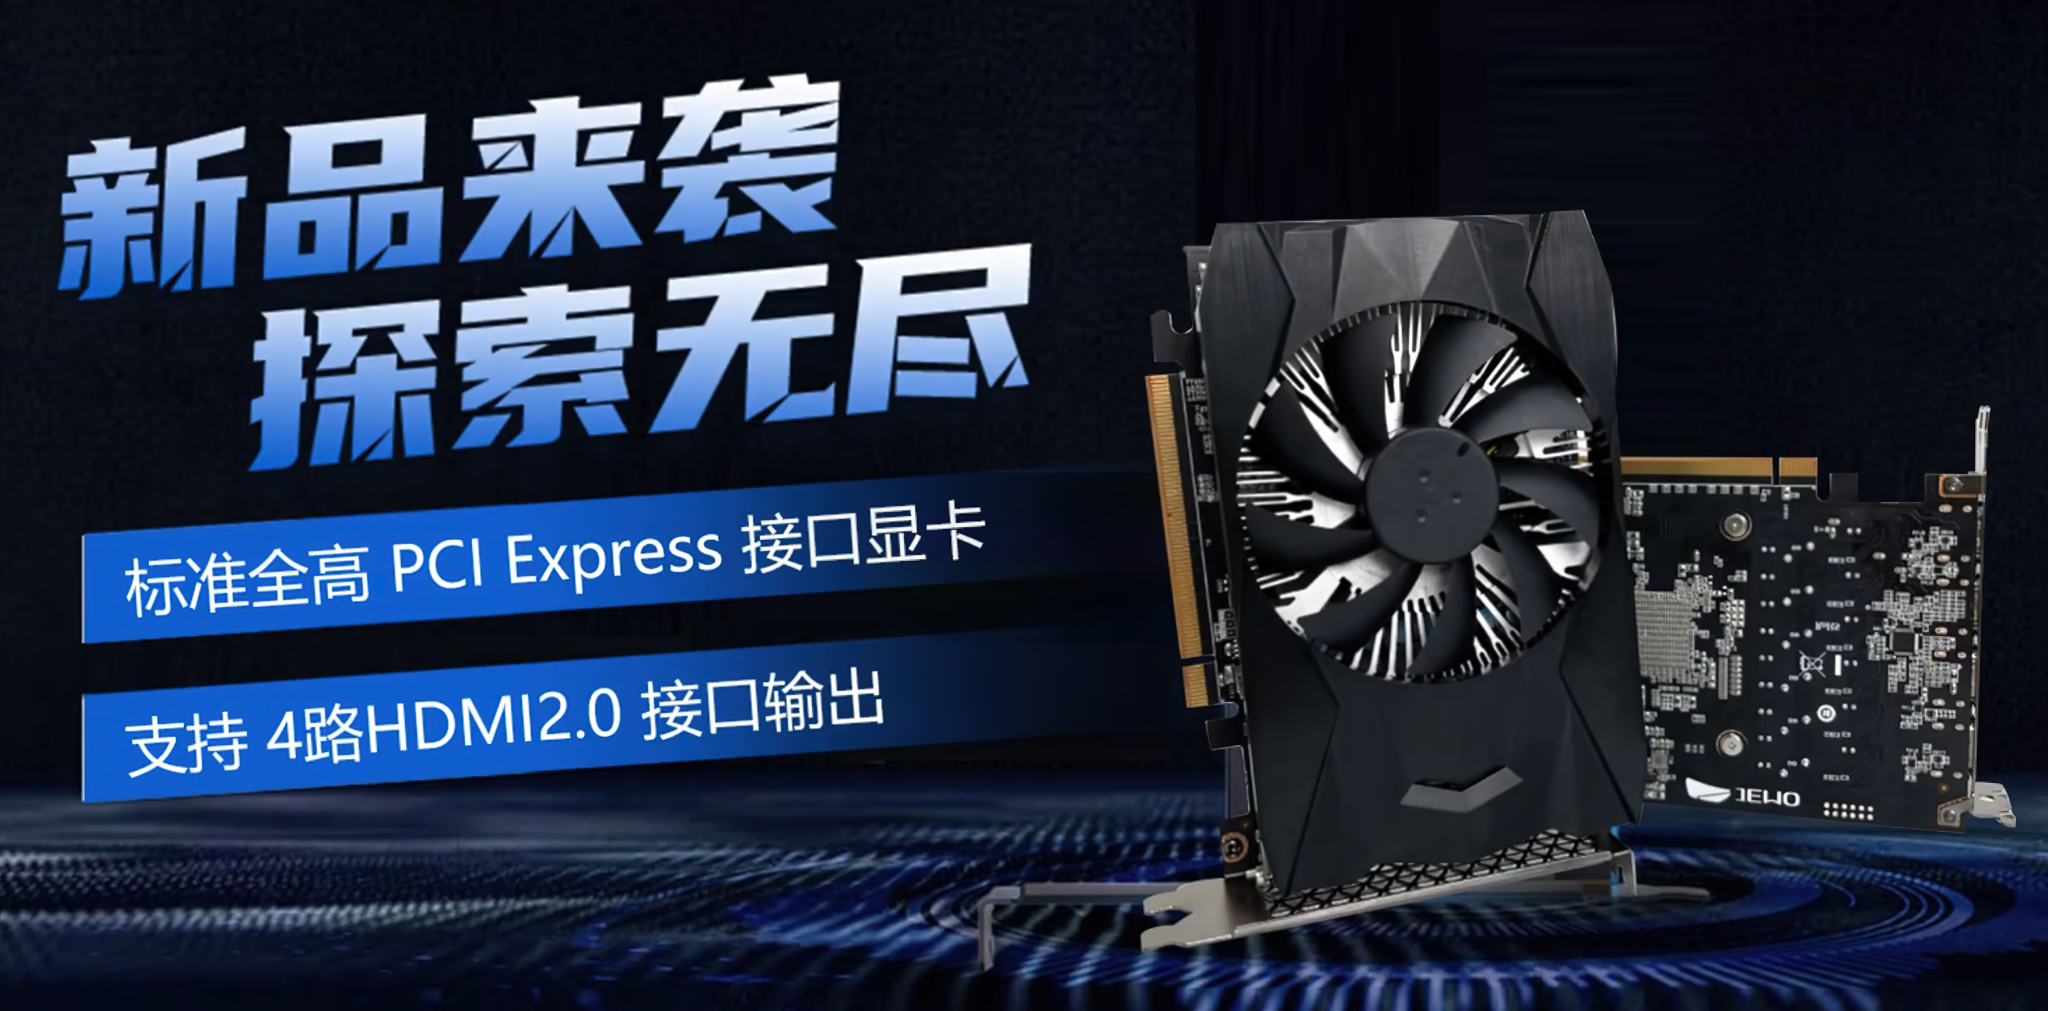 Hãng Trung Quốc GITSTAR hé lộ GPU JH920 mạnh hơn GTX 1050, hỗ trợ cả AMD FSR